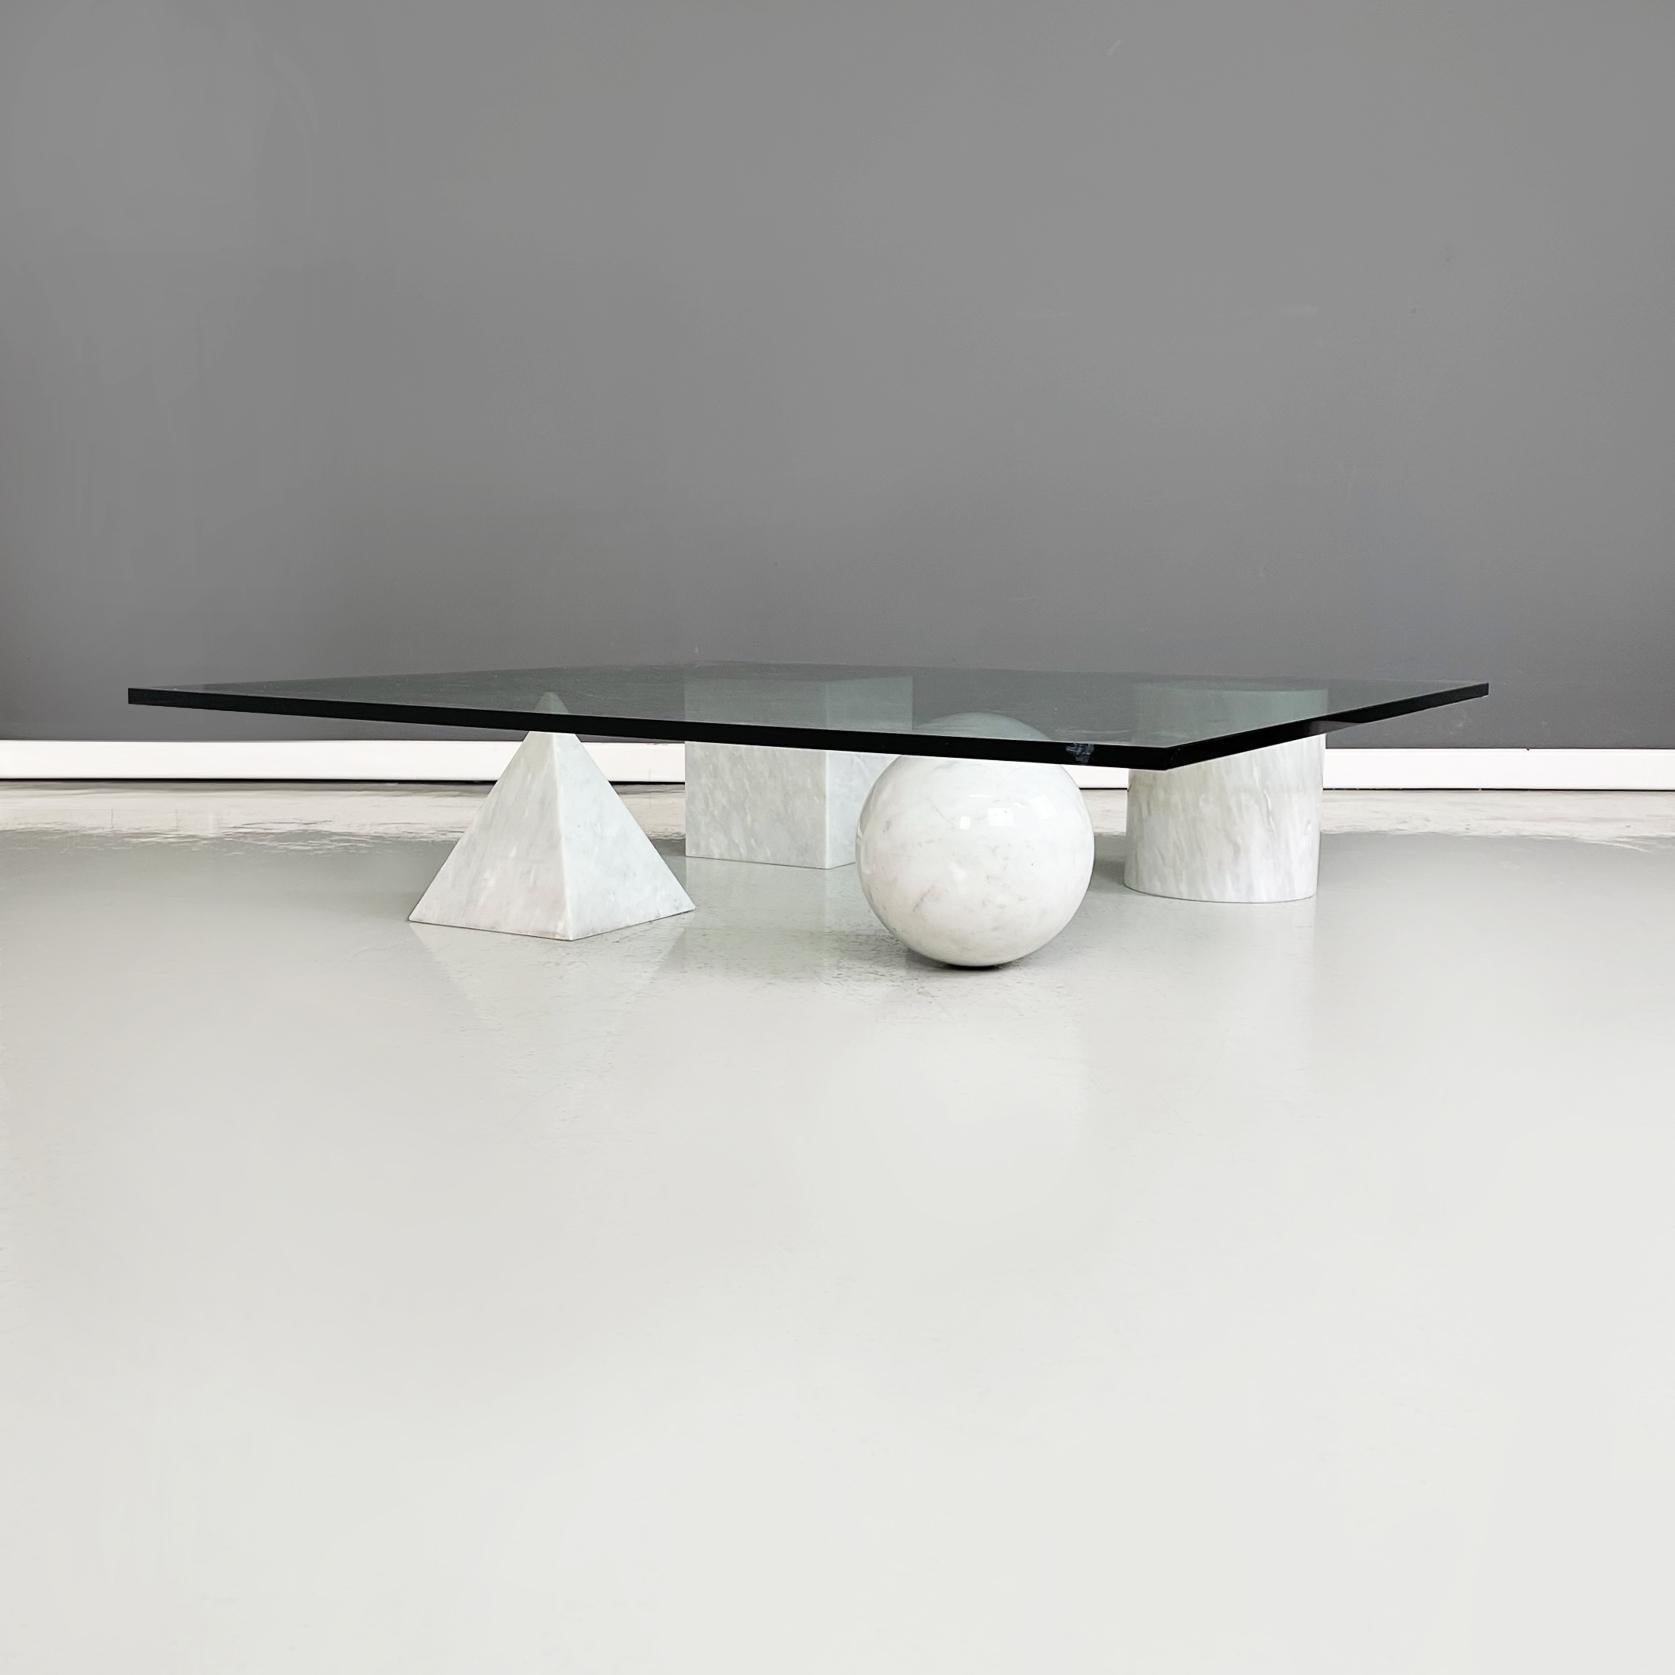 Italie table basse moderne Metafora par Massimo et Lella Vignelli pour Casigliani, années 1980
Table basse mod. Metafora avec plateau carré en verre épais vert aigue-marine. Les 4 pieds sont constitués de 4 formes géométriques en marbre blanc :